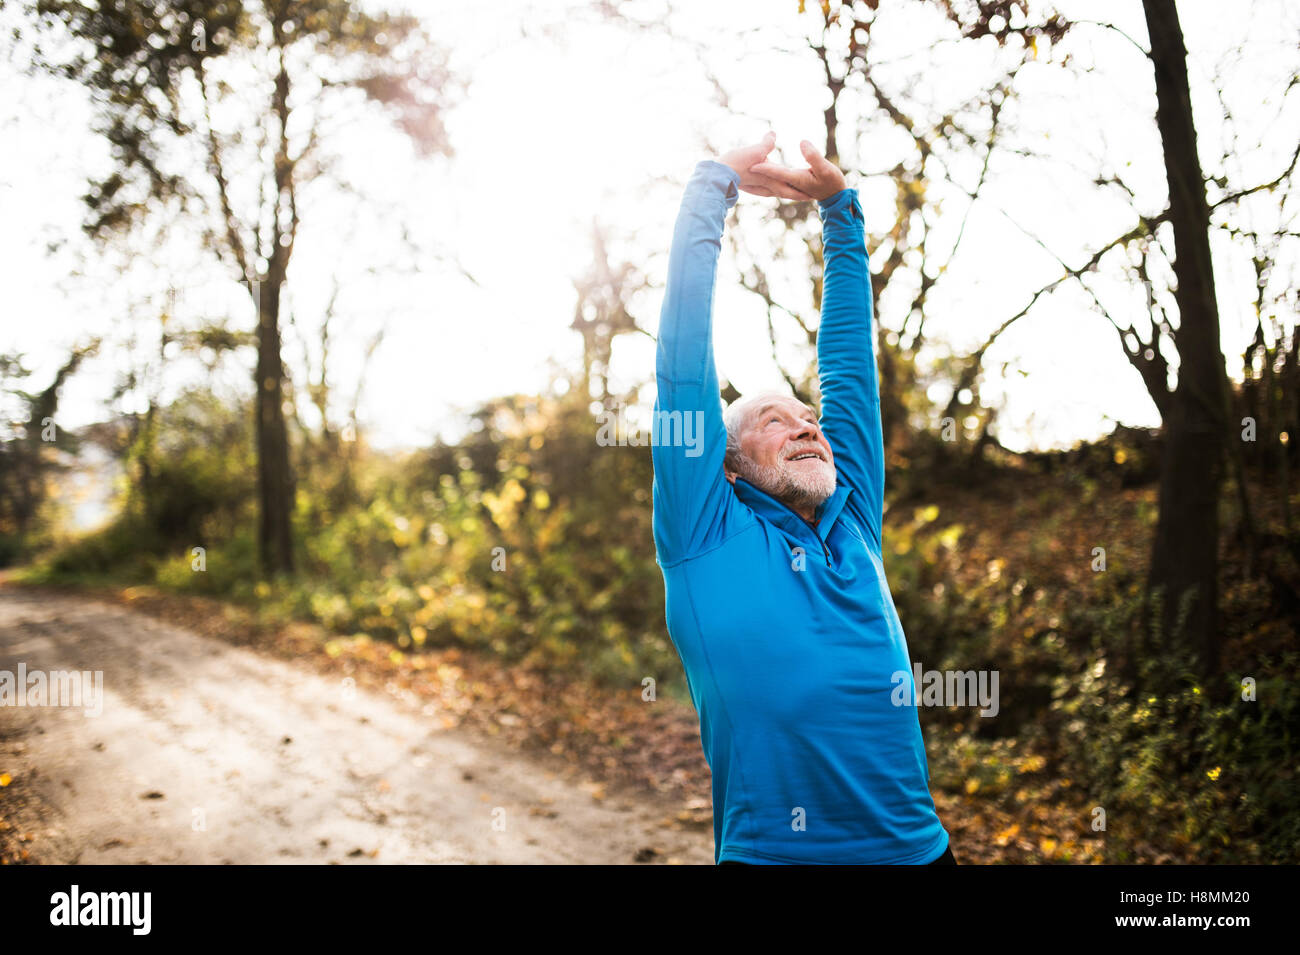 Hauts runner doing stretching dans la nature ensoleillée d'automne. Banque D'Images